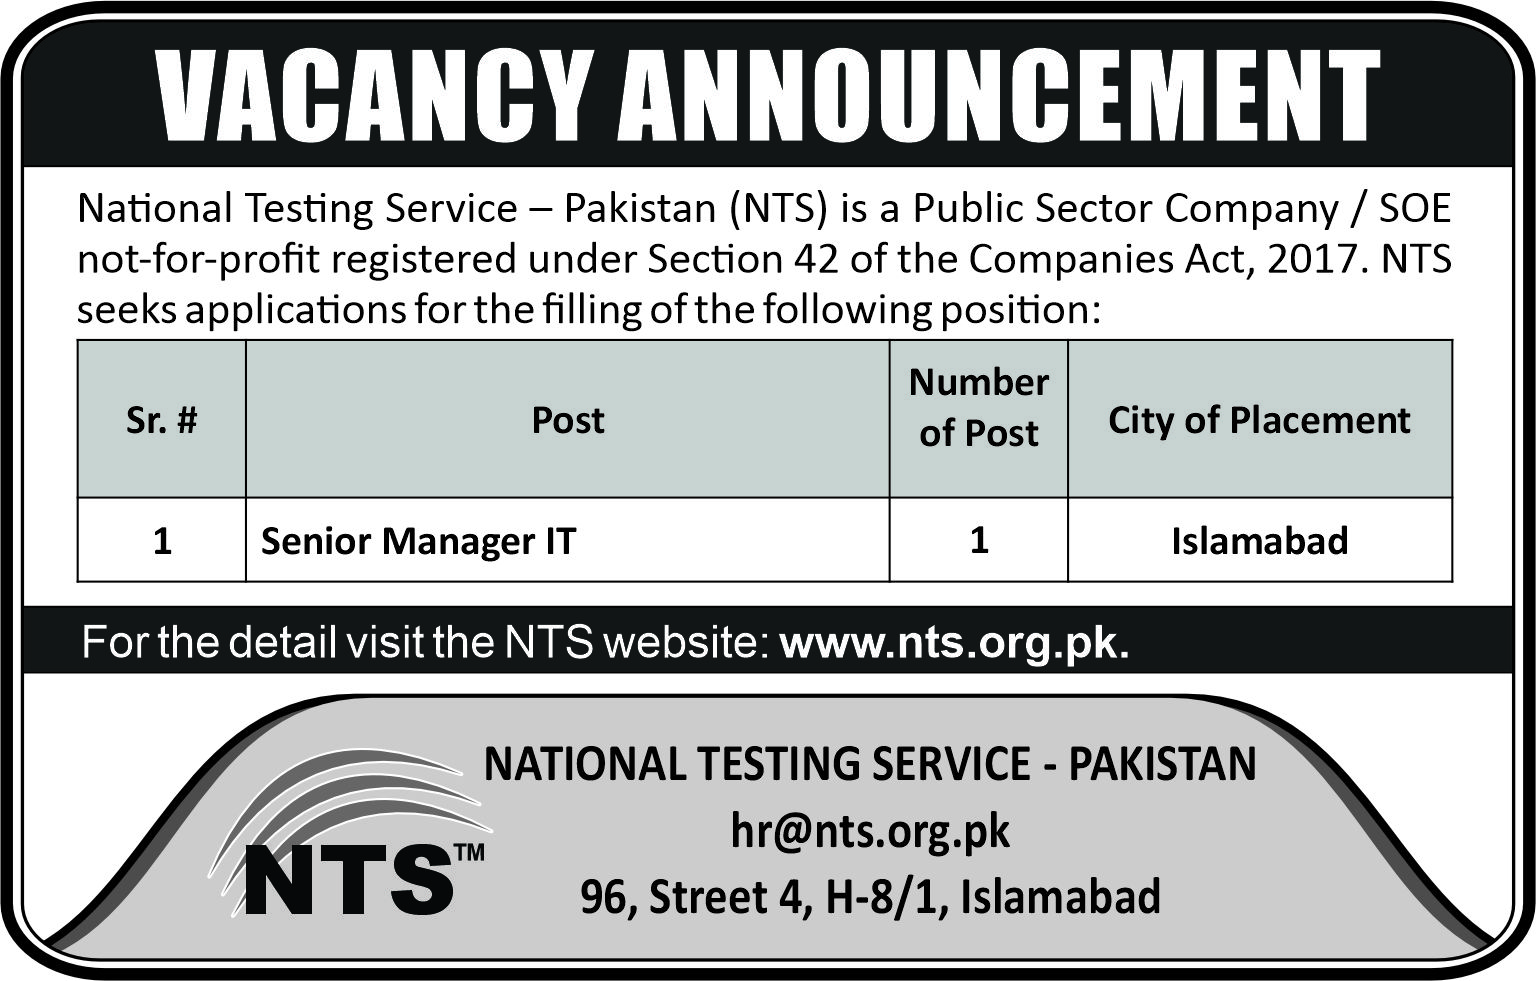 NTS Islamabad Jobs 2024